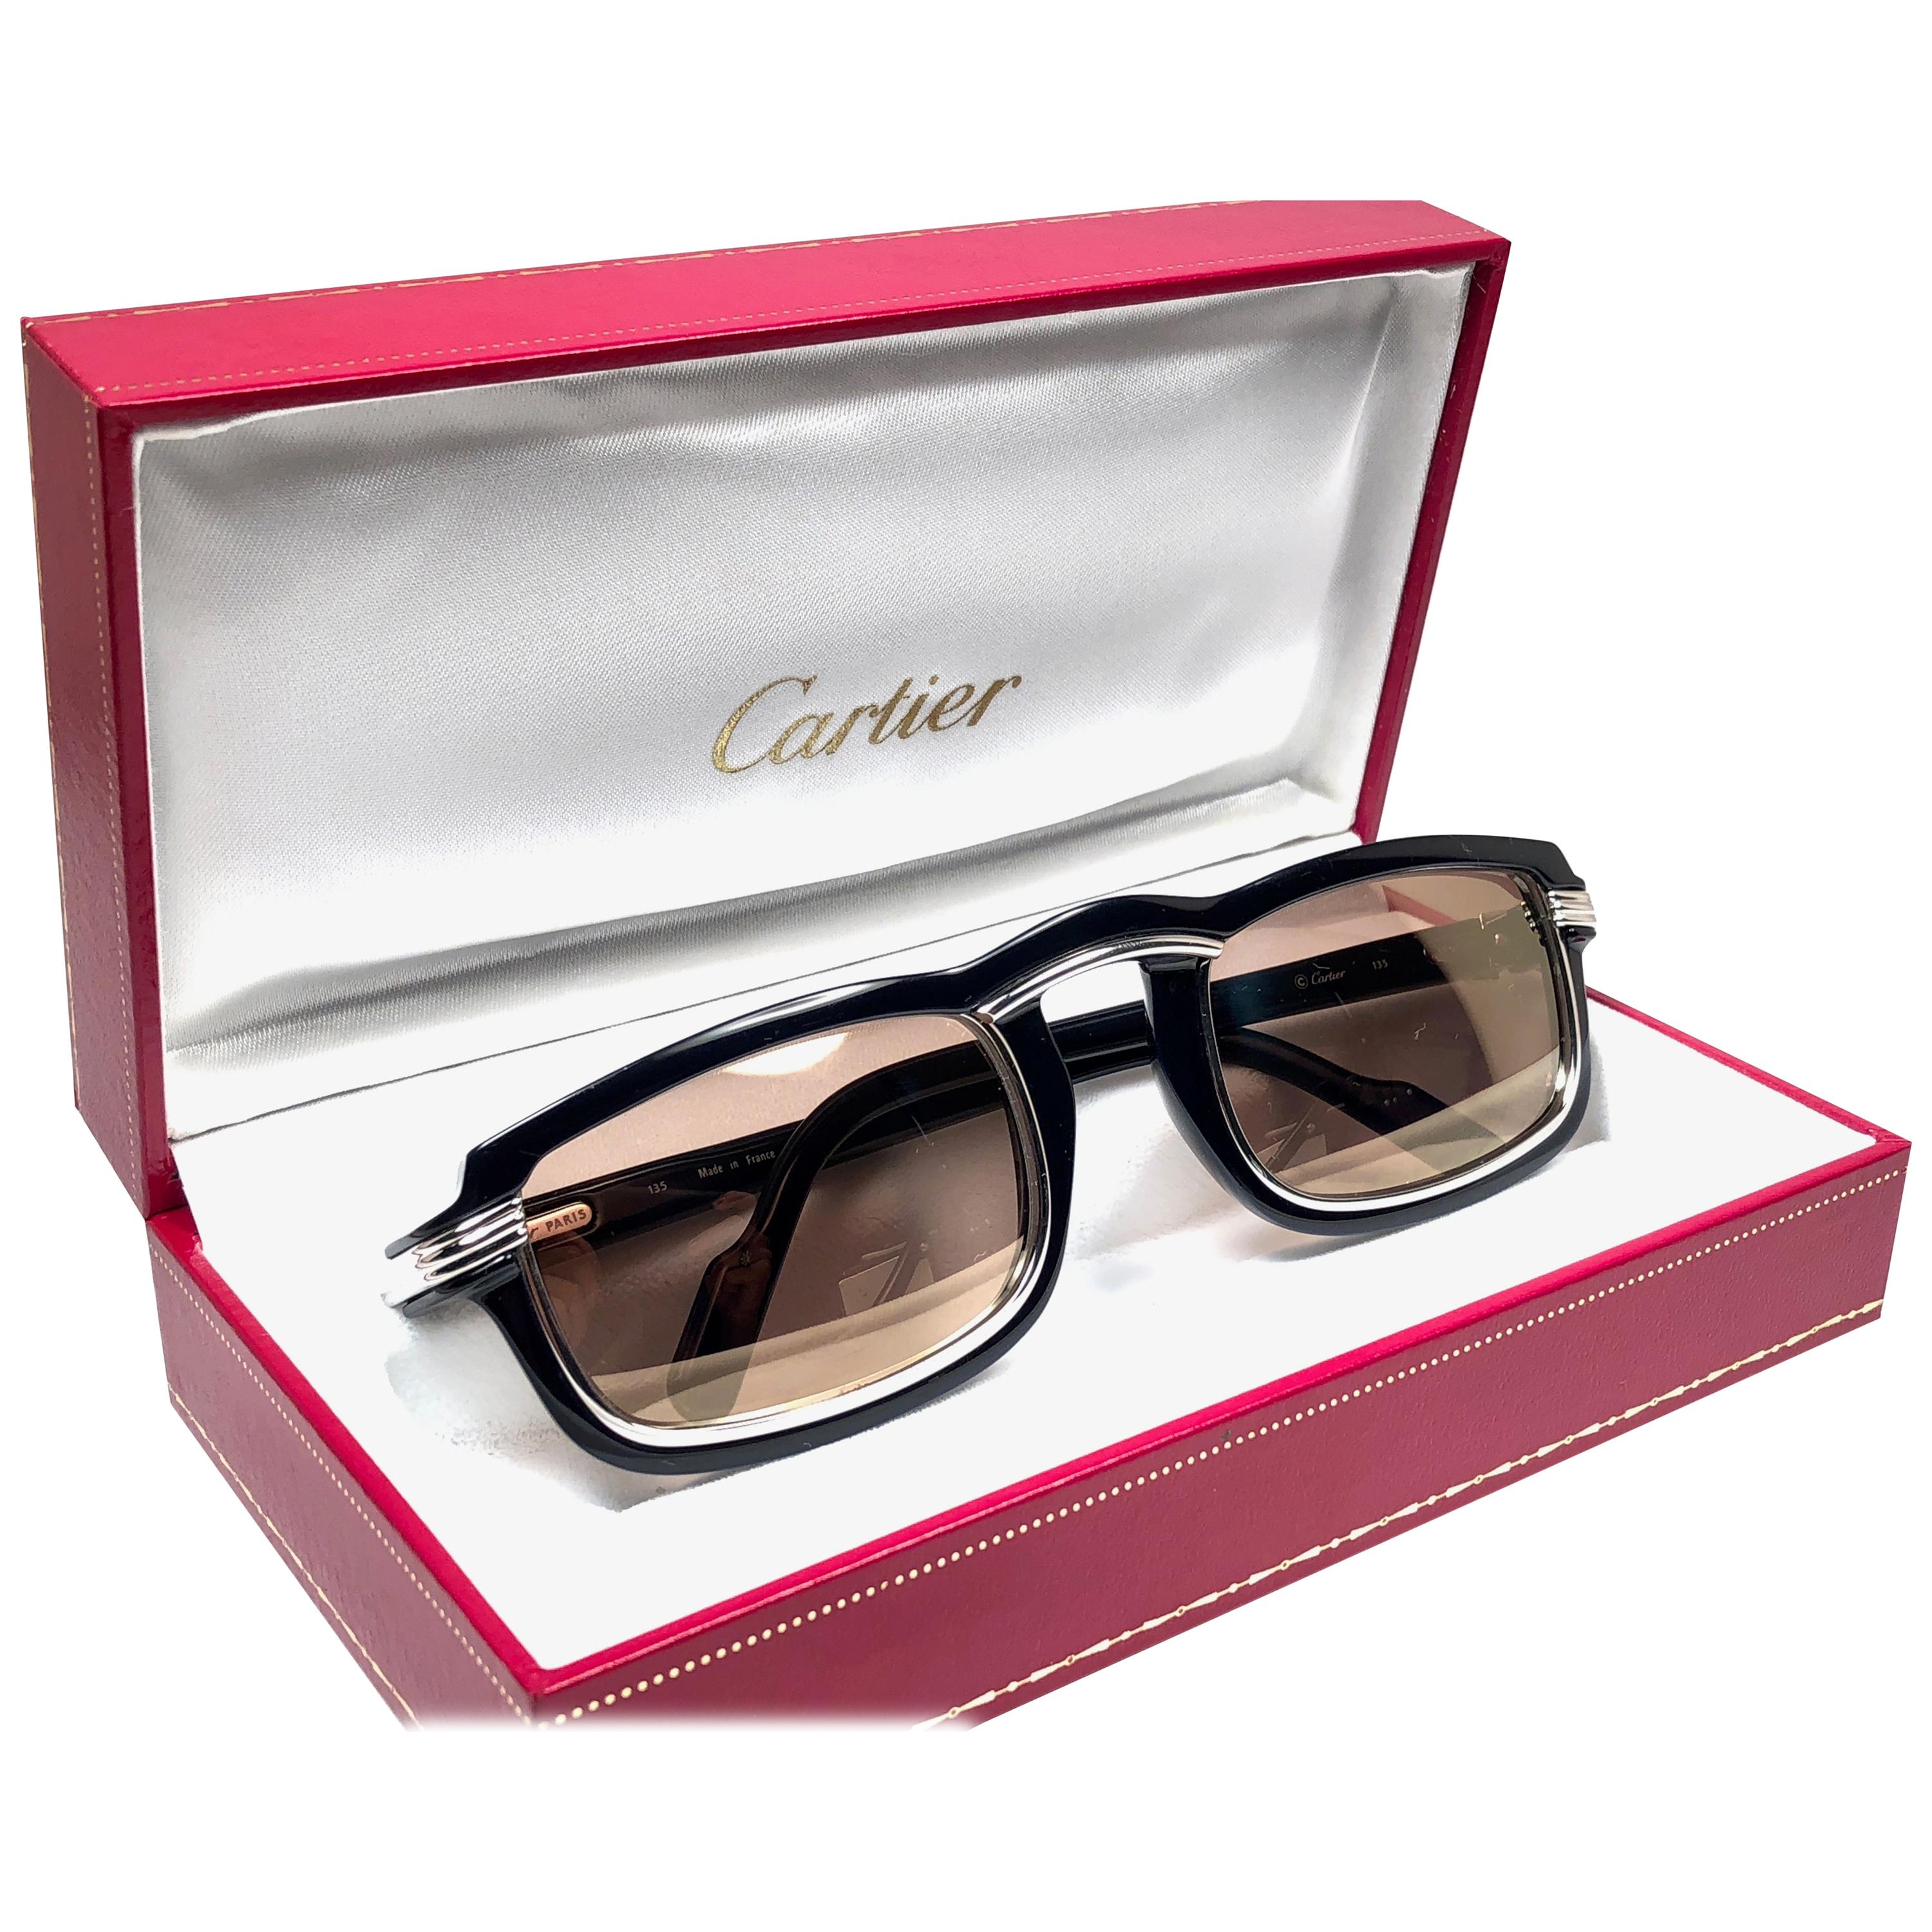  Cartier Vintage Vertigo Deep Blue and Platinum 54MM Sunglasses, France 1991